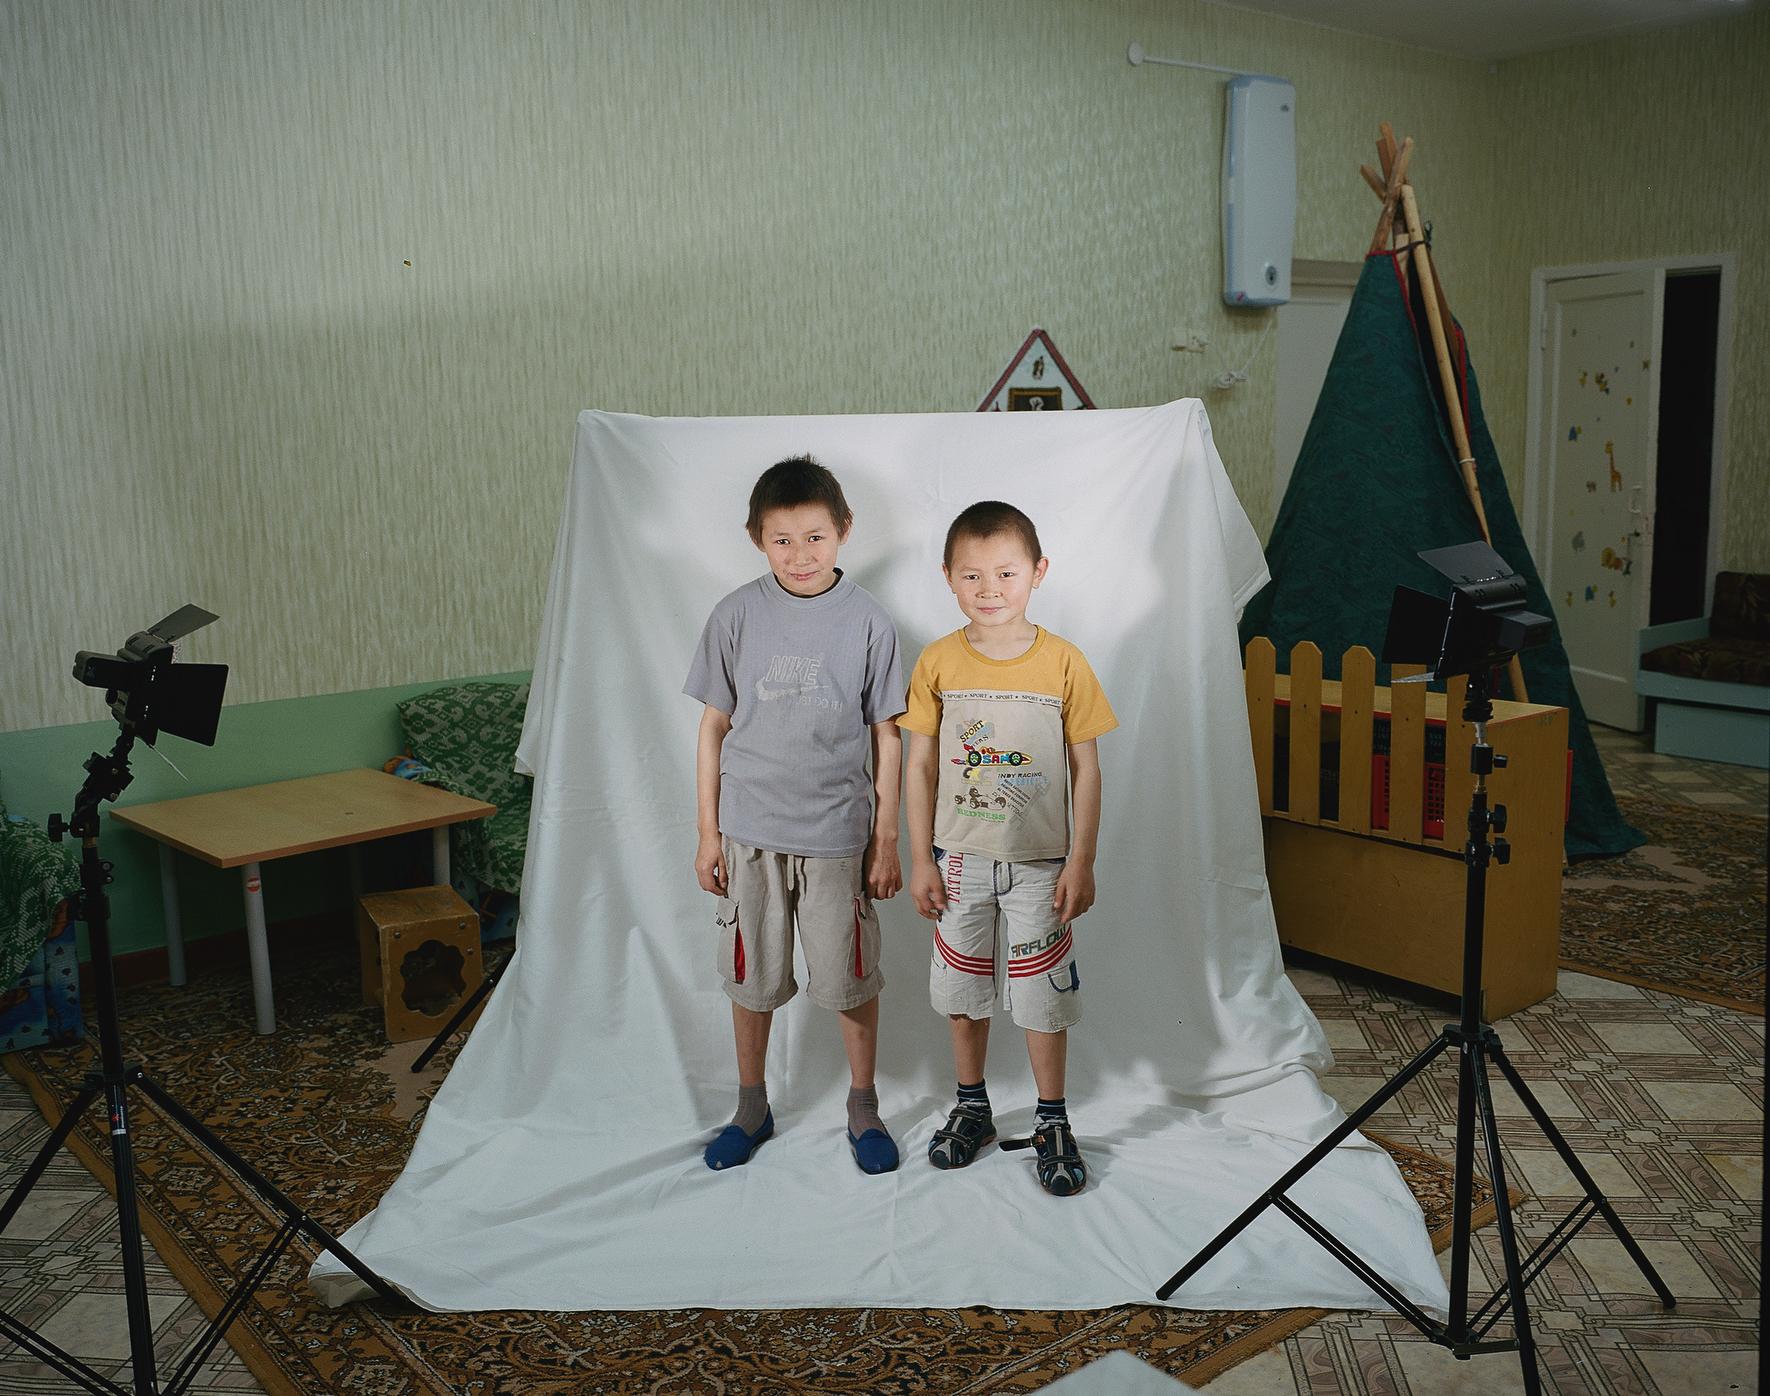 Toundra des Enfants: Nenet Enfants à l'Intérieur de la Russie Autochtones du pensionnat